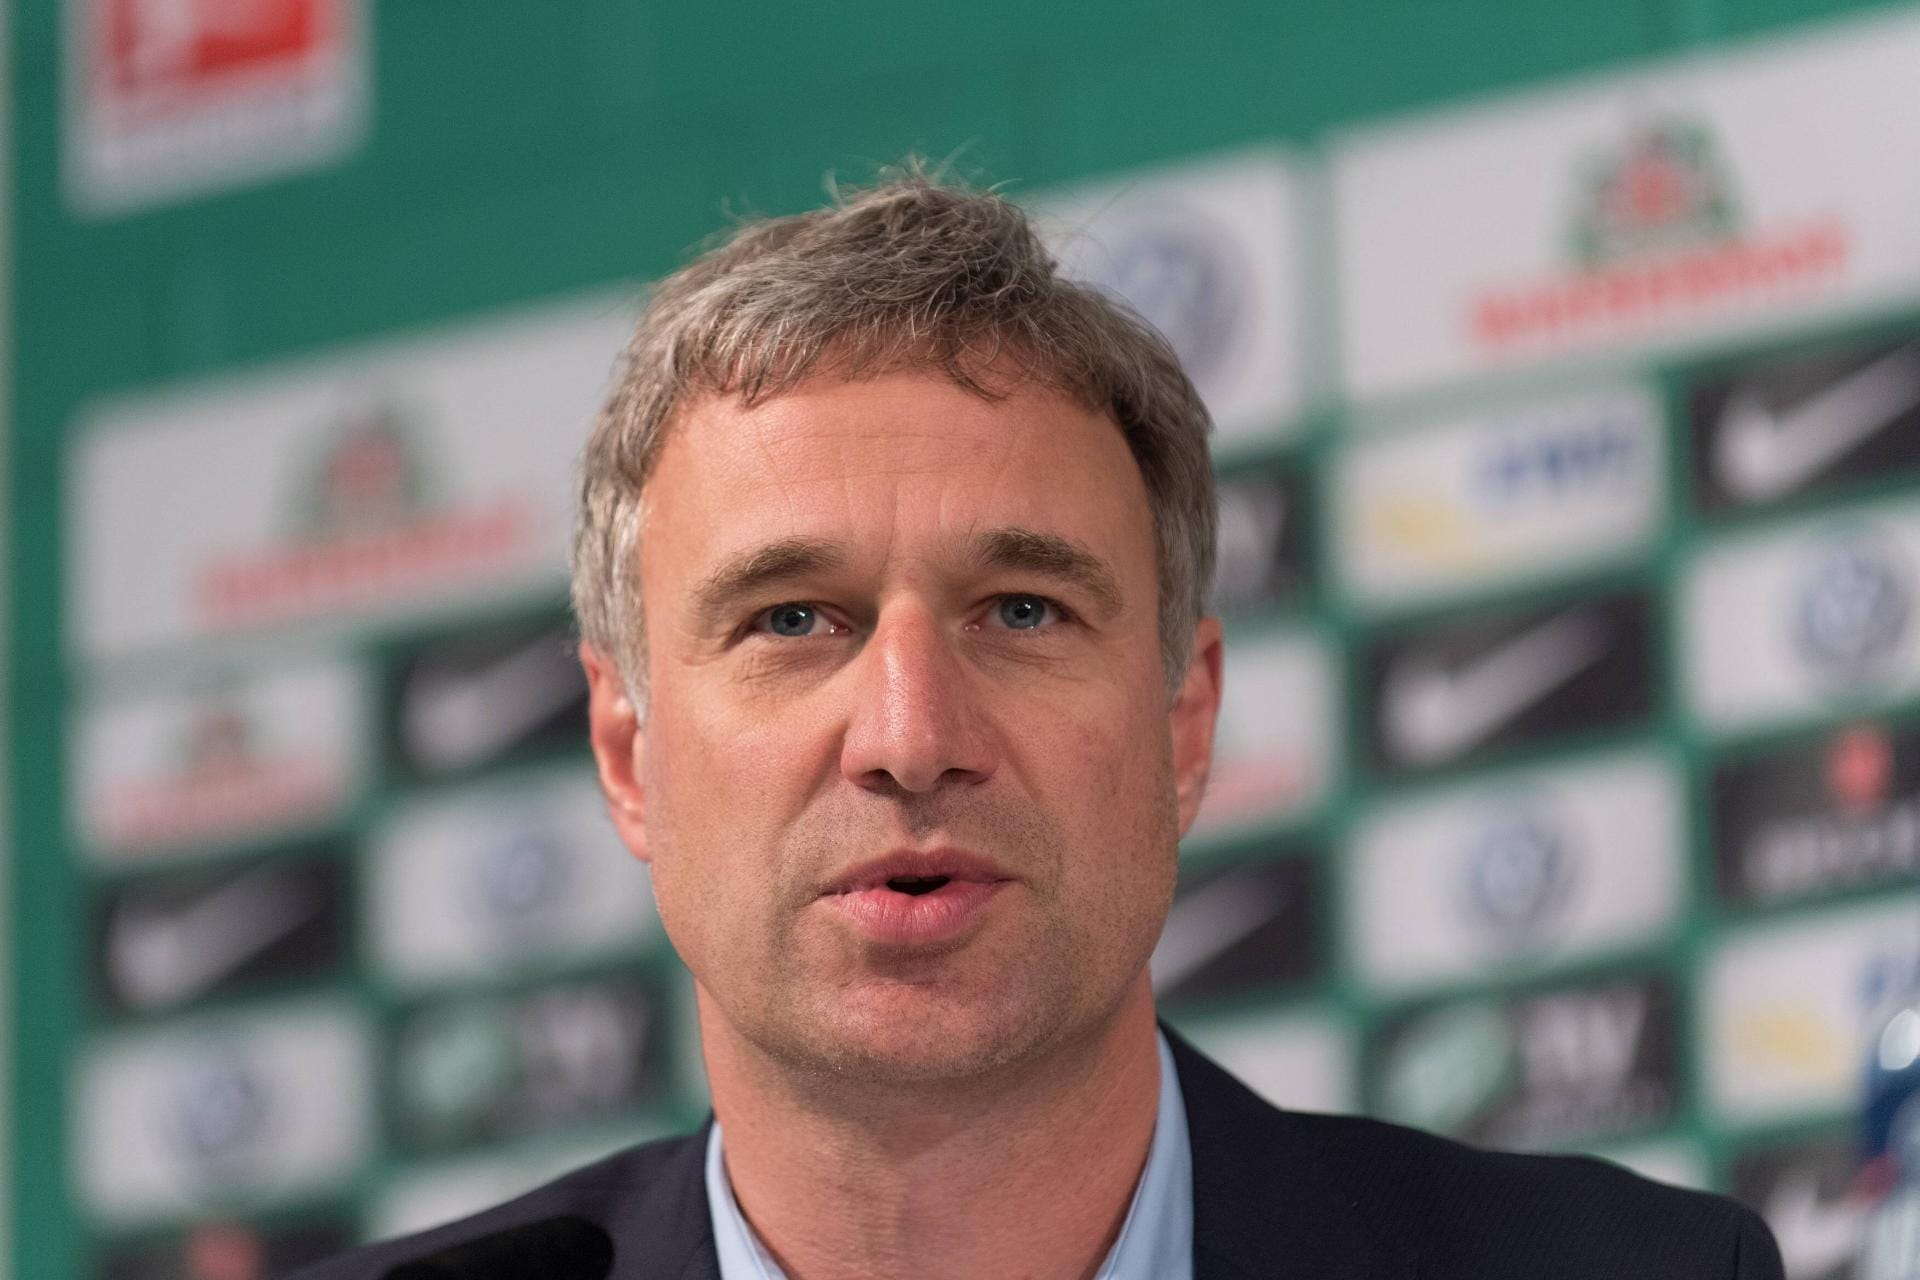 Marco Bode ists eit 2014 Aufsichtsratsvorsitzender beim SV Werder Bremen.